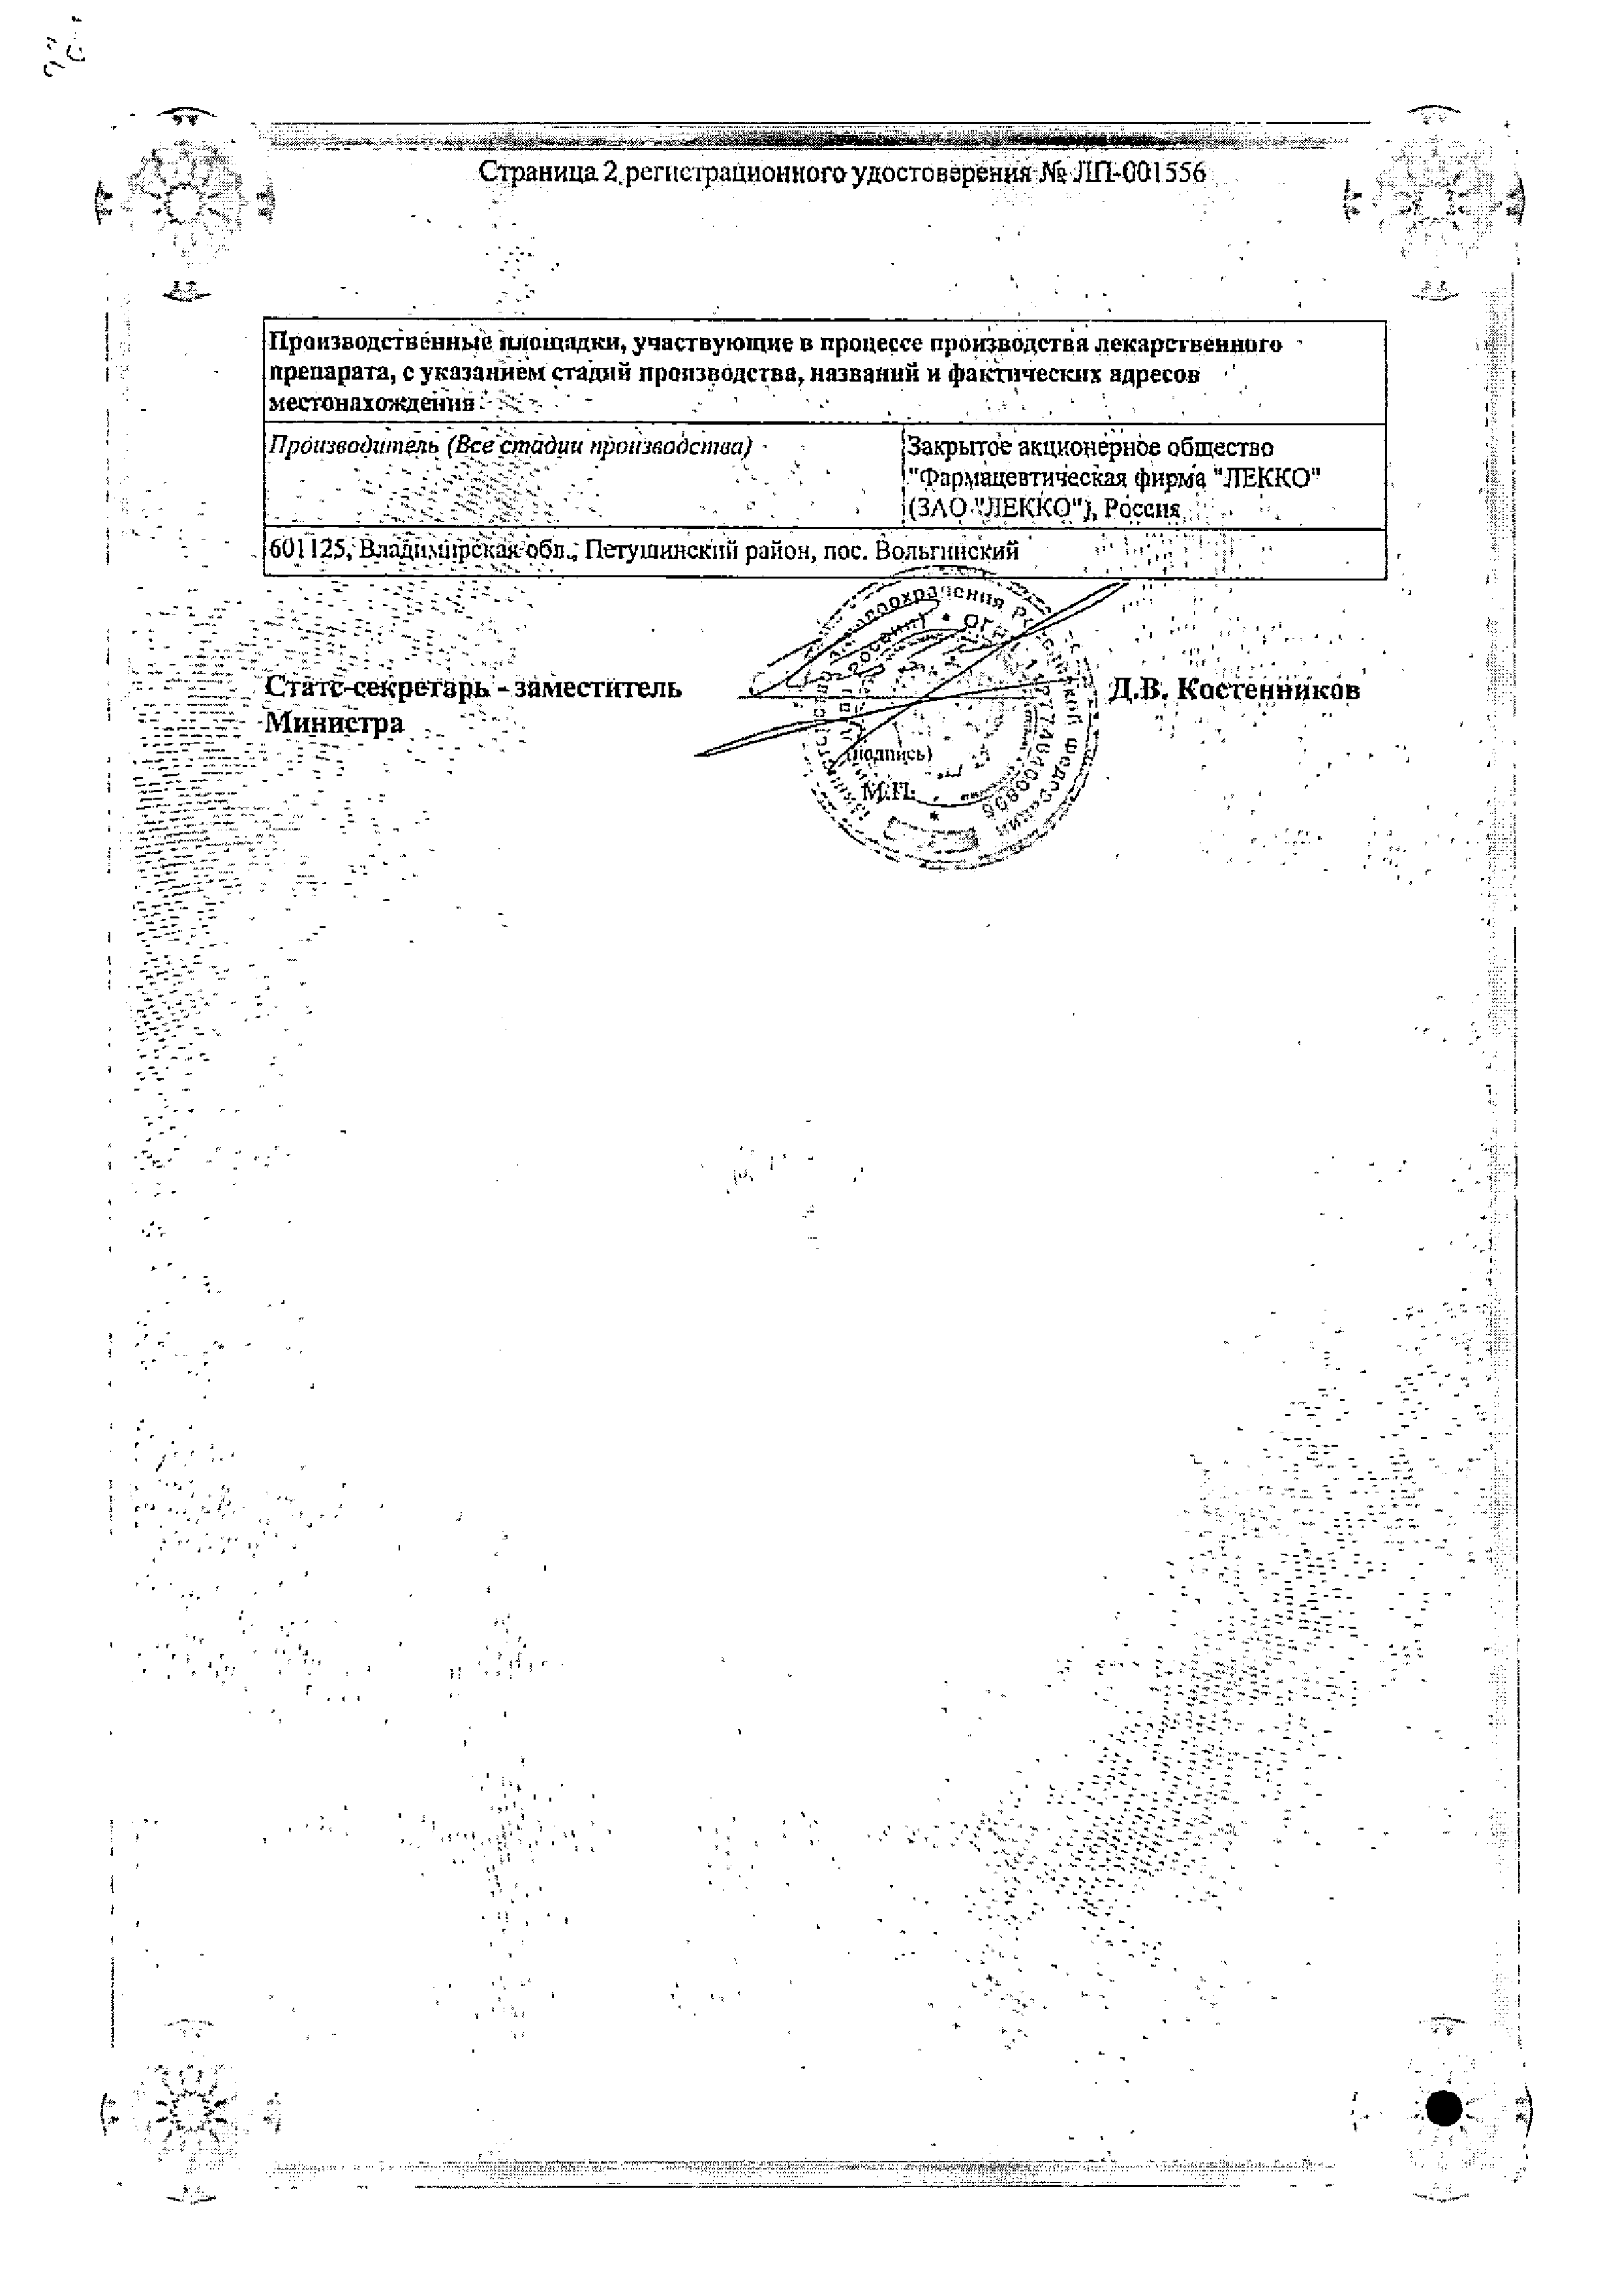 Фенилэфрин-оптик сертификат